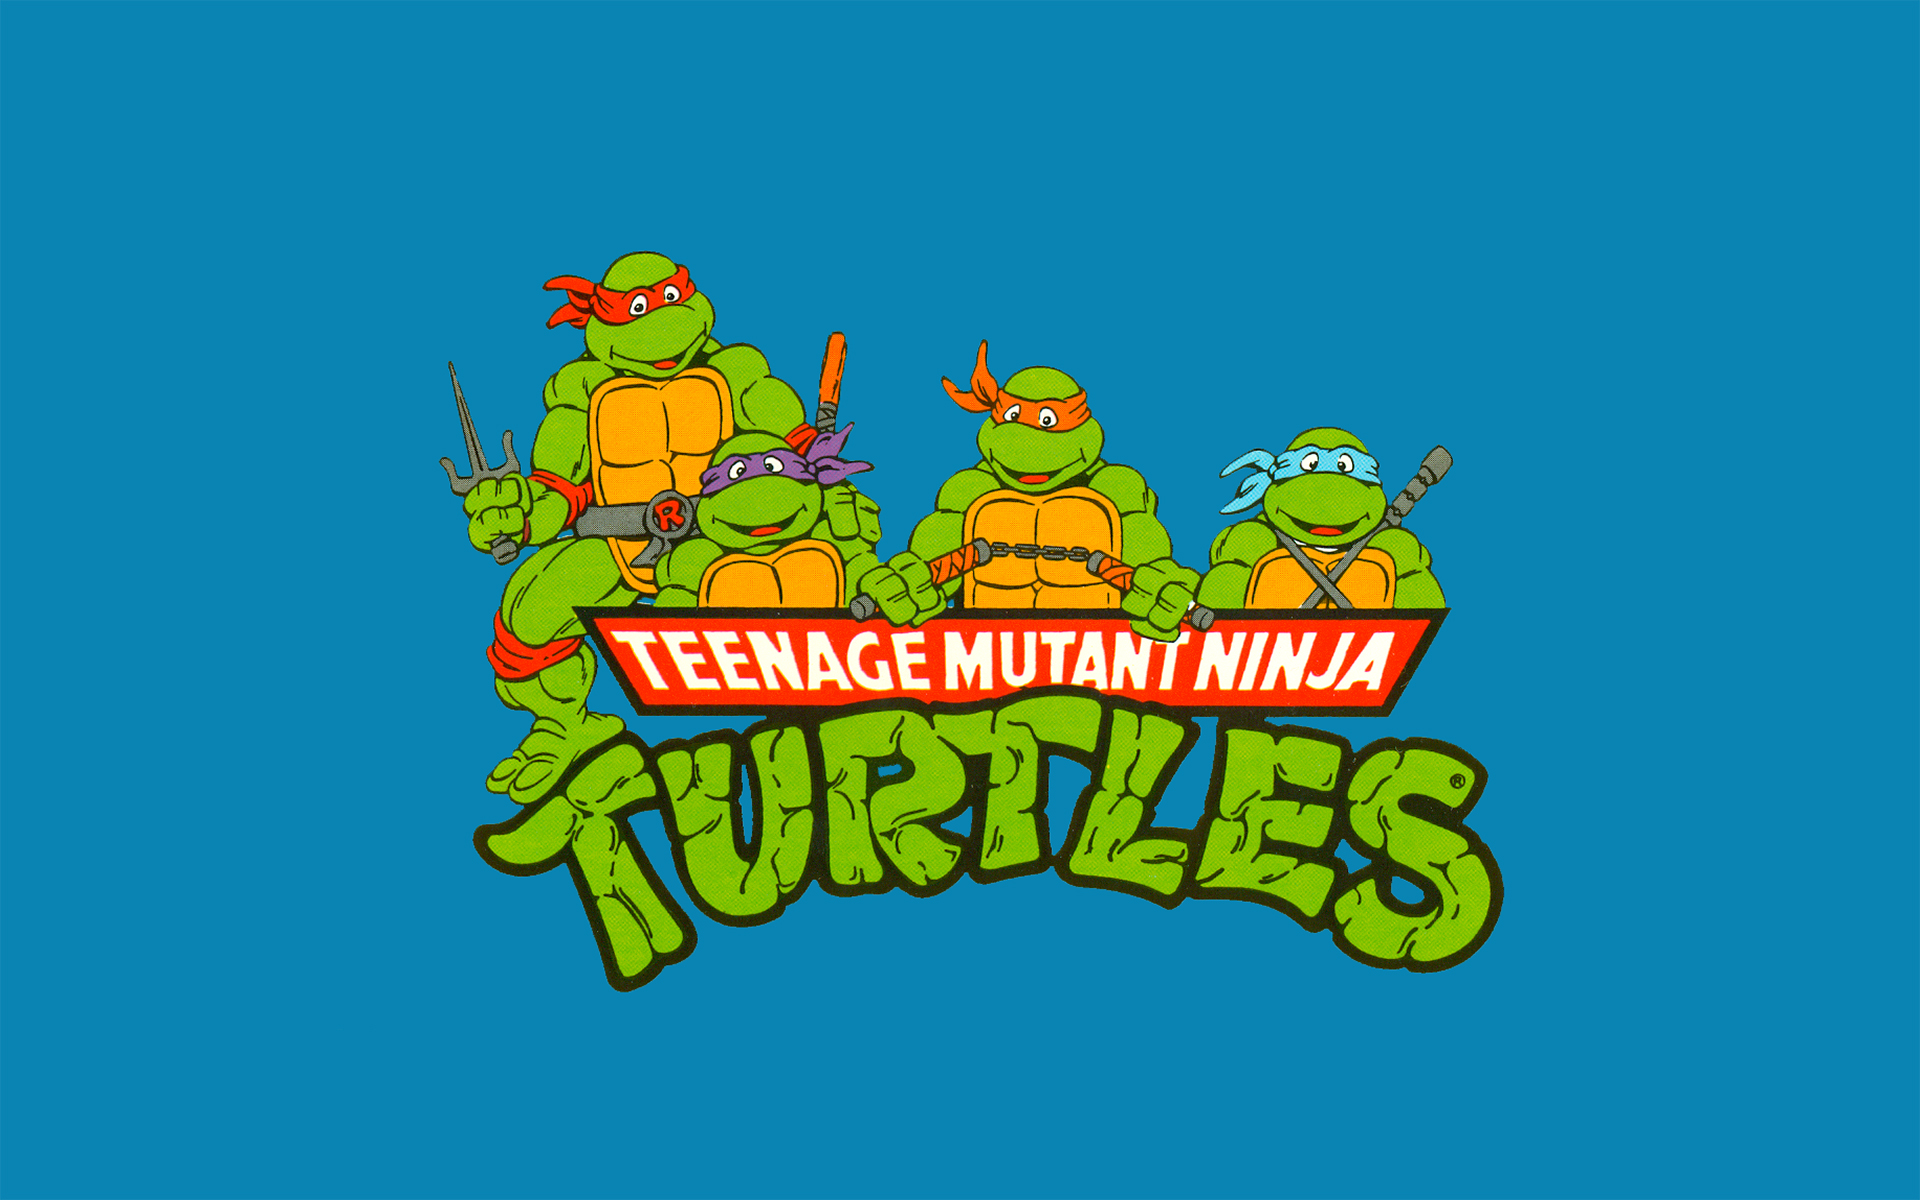 tmnt, tv show, teenage mutant ninja turtles, donatello (tmnt), leonardo (tmnt), michelangelo (tmnt), raphael (tmnt)